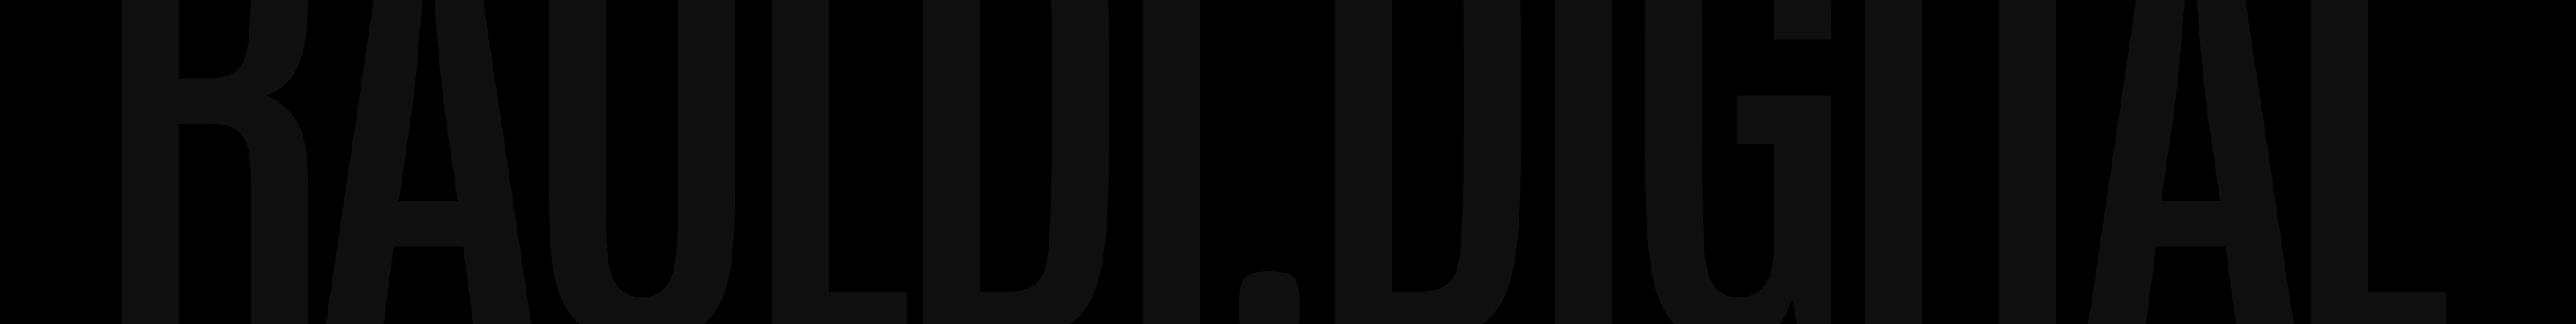 Profil-Banner von Rauldi Digital